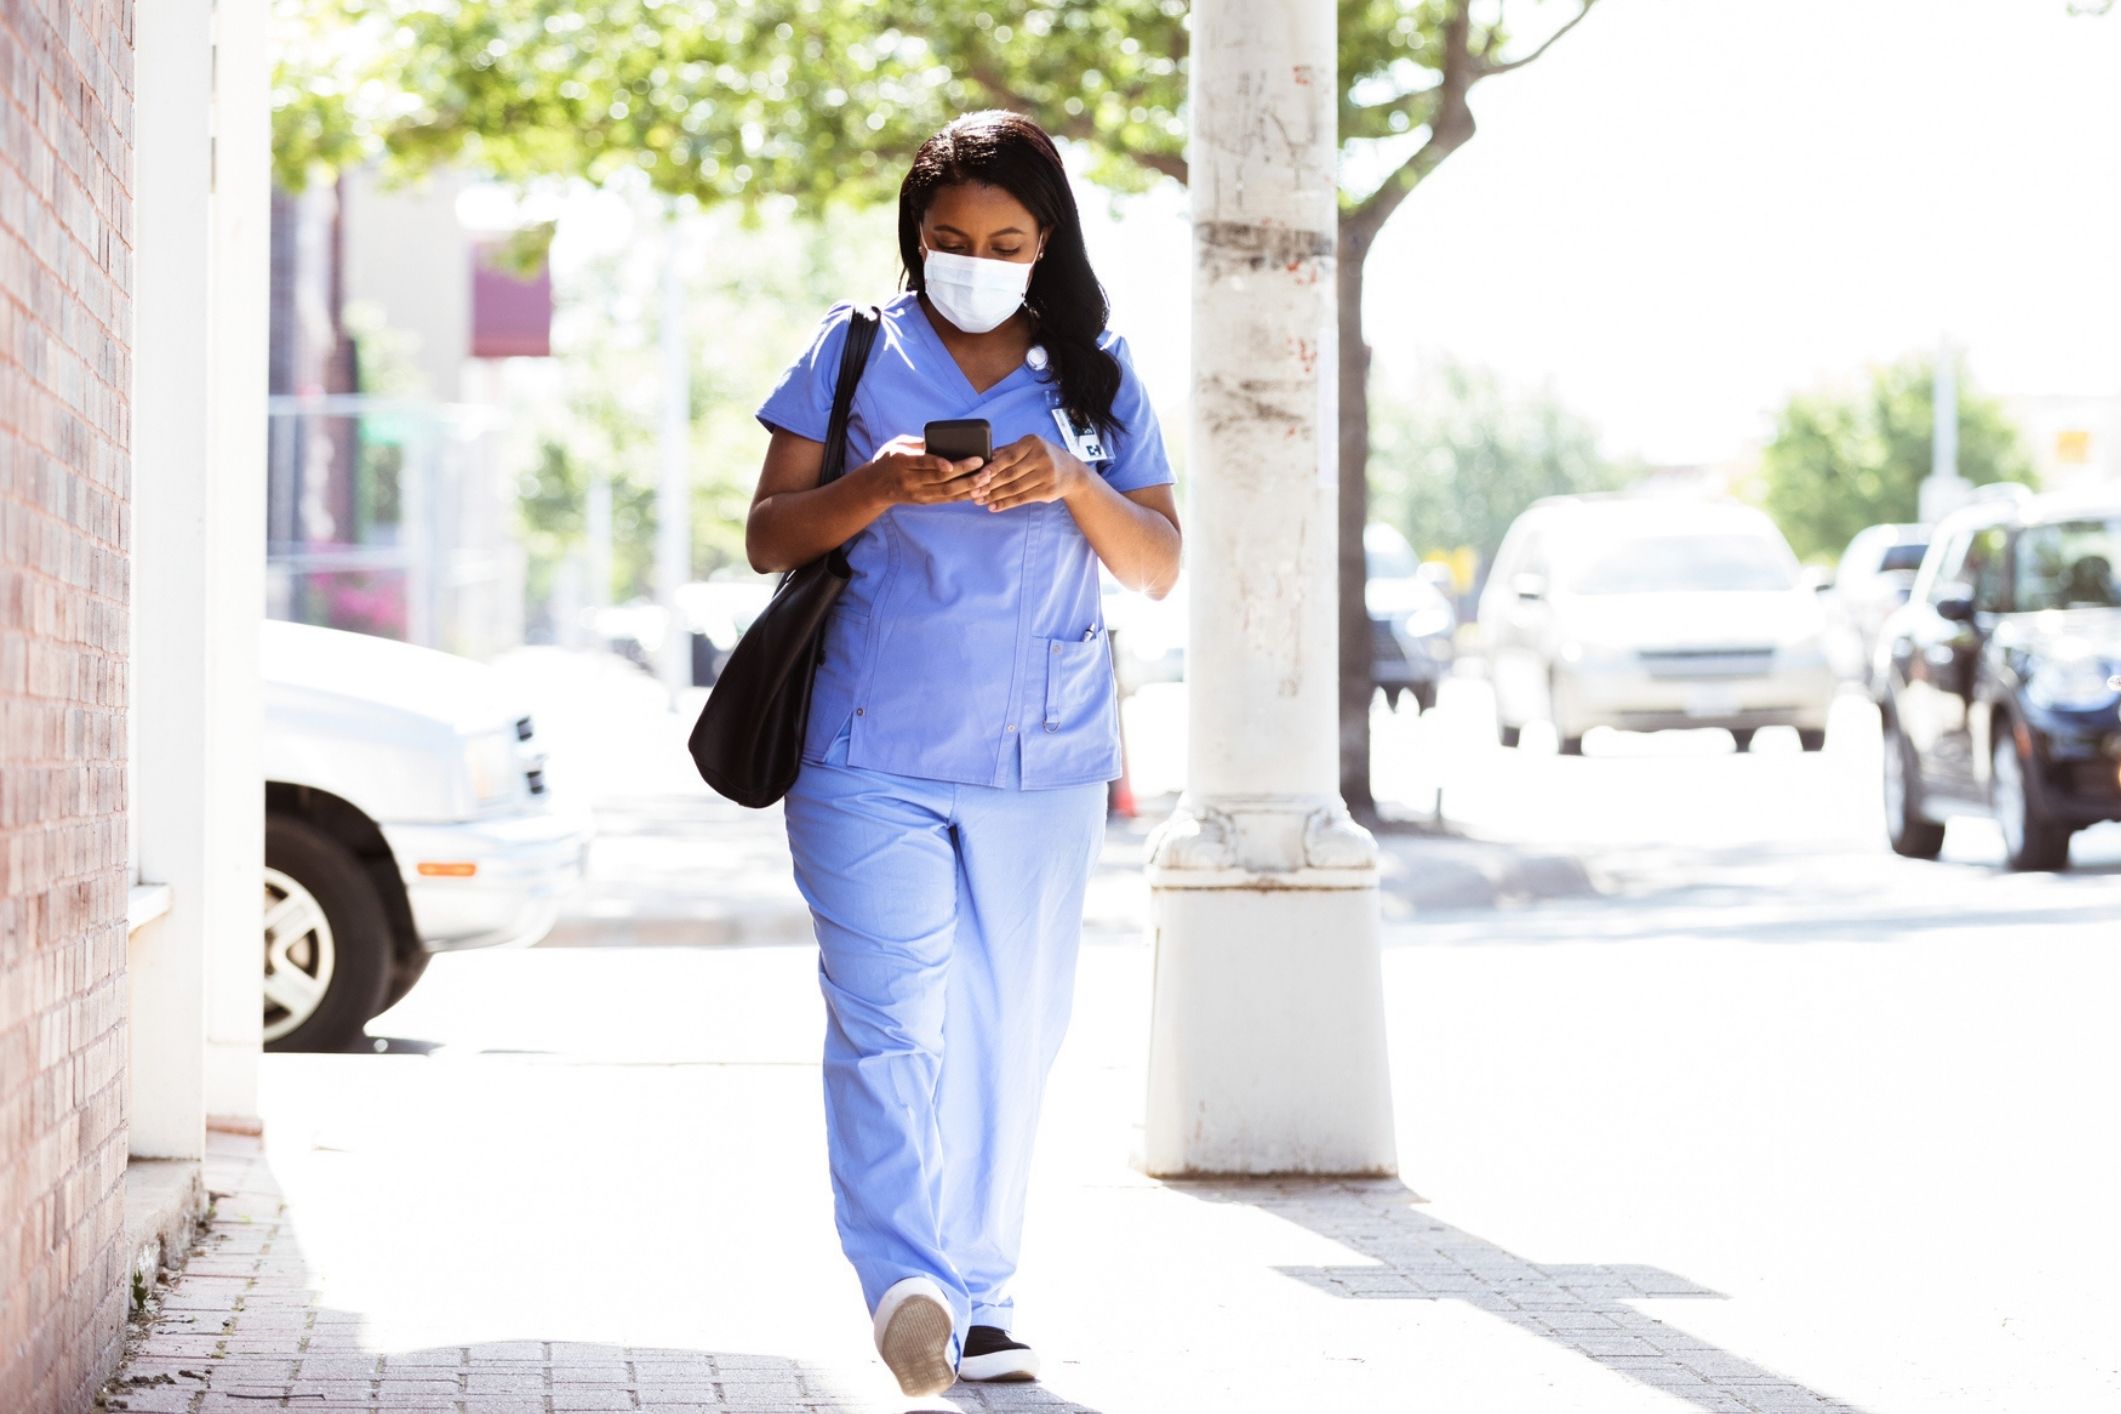 Nurse walking in city